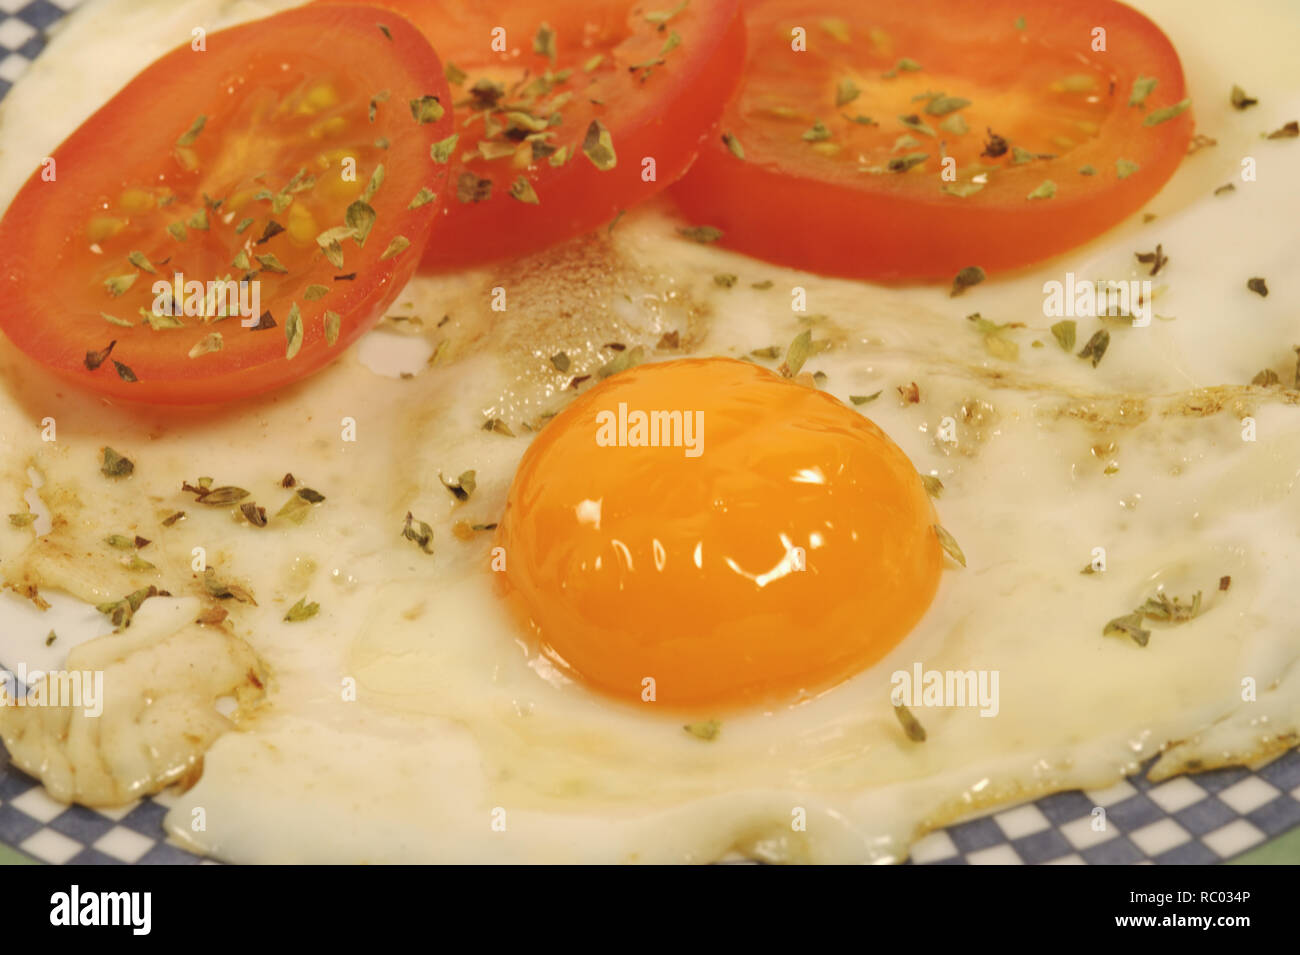 Spiegelei mit frischen Tomaten | uovo fritto con pomodori freschi Foto Stock